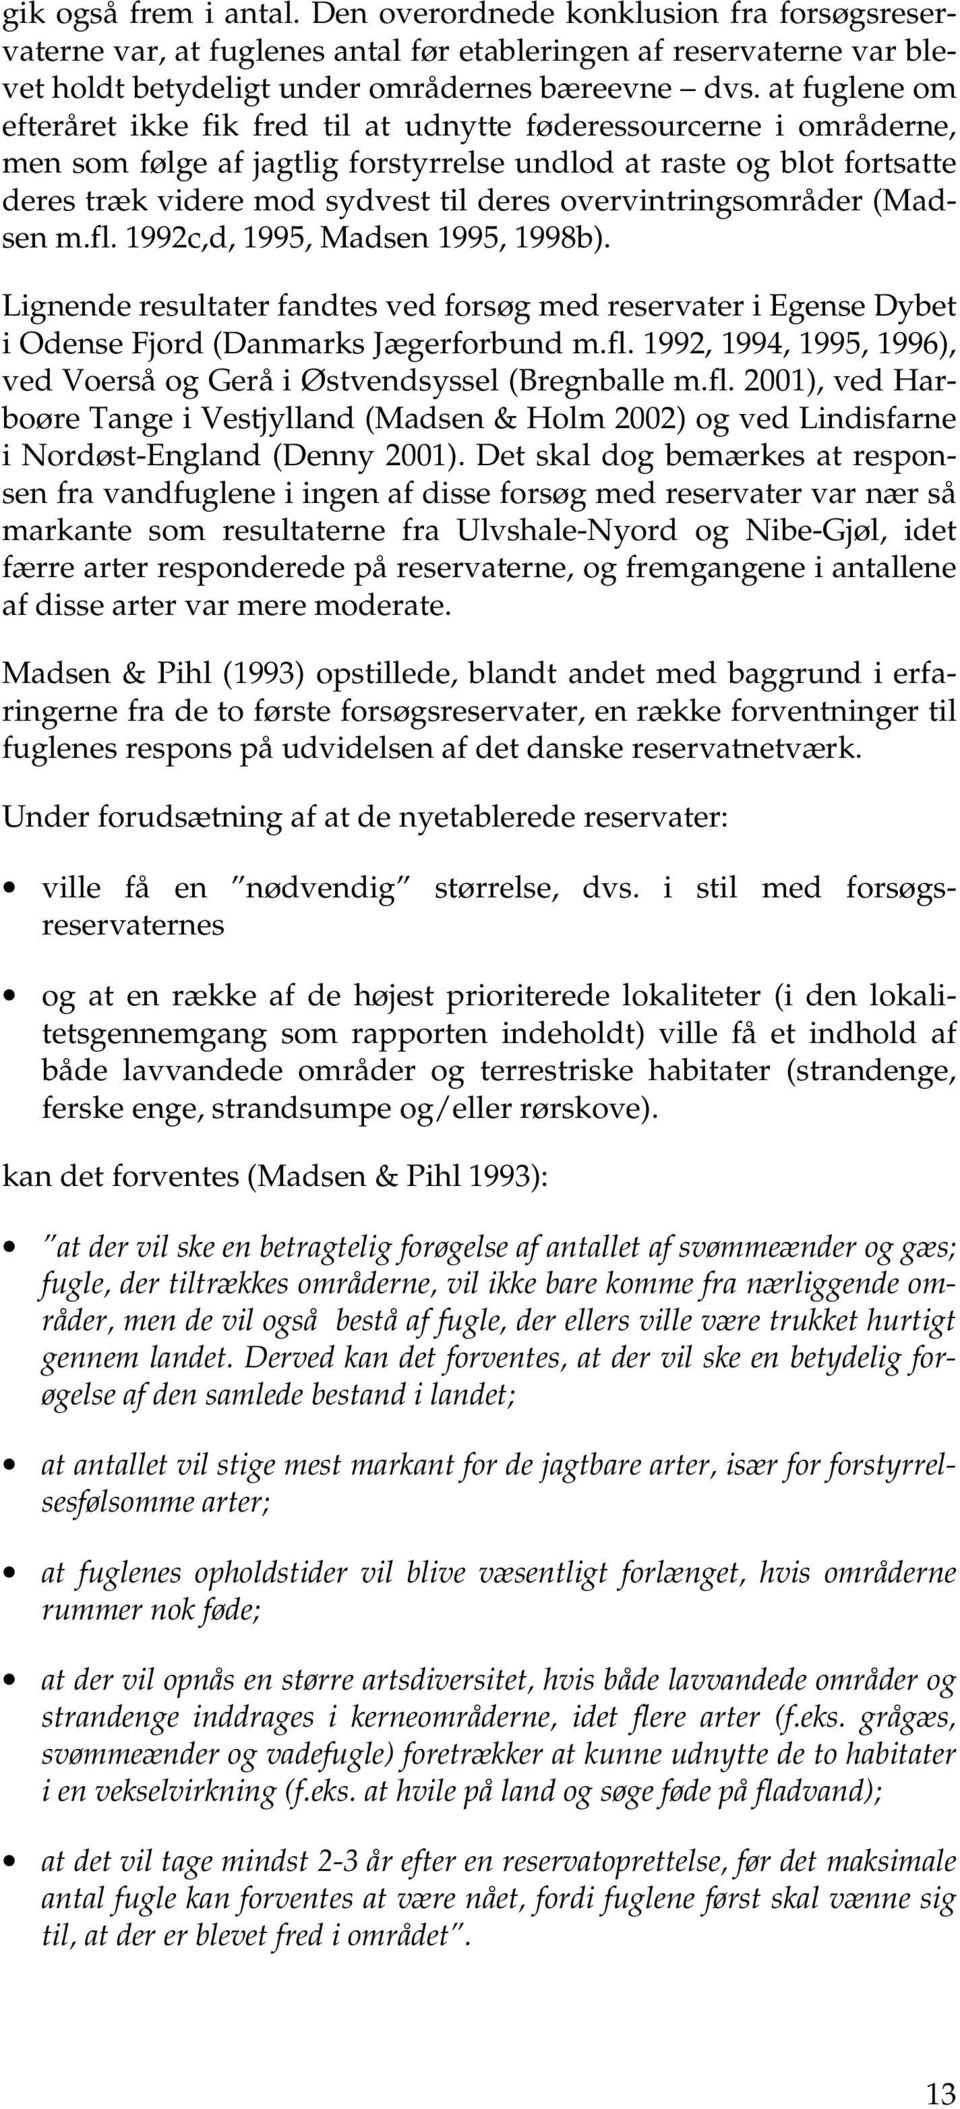 overvintringsområder (Madsen m.fl. 1992c,d, 1995, Madsen 1995, 1998b). Lignende resultater fandtes ved forsøg med reservater i Egense Dybet i Odense Fjord (Danmarks Jægerforbund m.fl. 1992, 1994, 1995, 1996), ved Voerså og Gerå i Østvendsyssel (Bregnballe m.